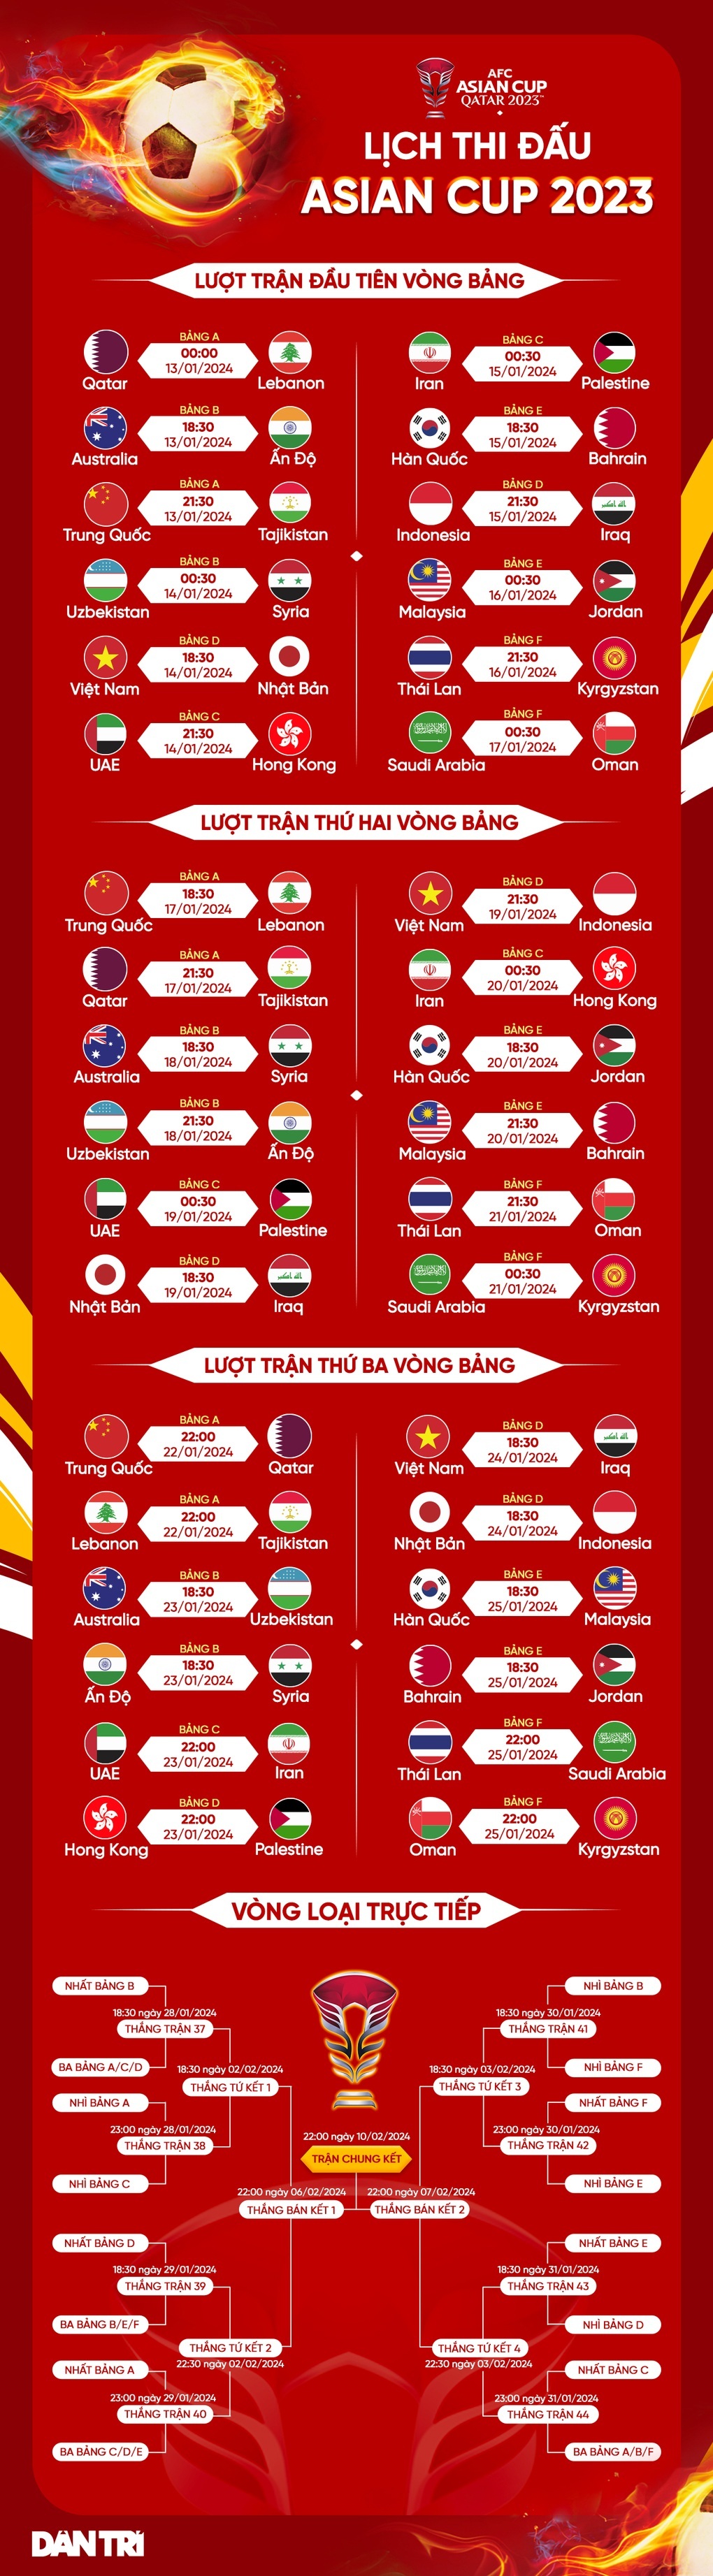 HLV Nhật Bản: Đội tuyển Việt Nam là đối thủ khó chơi - 3